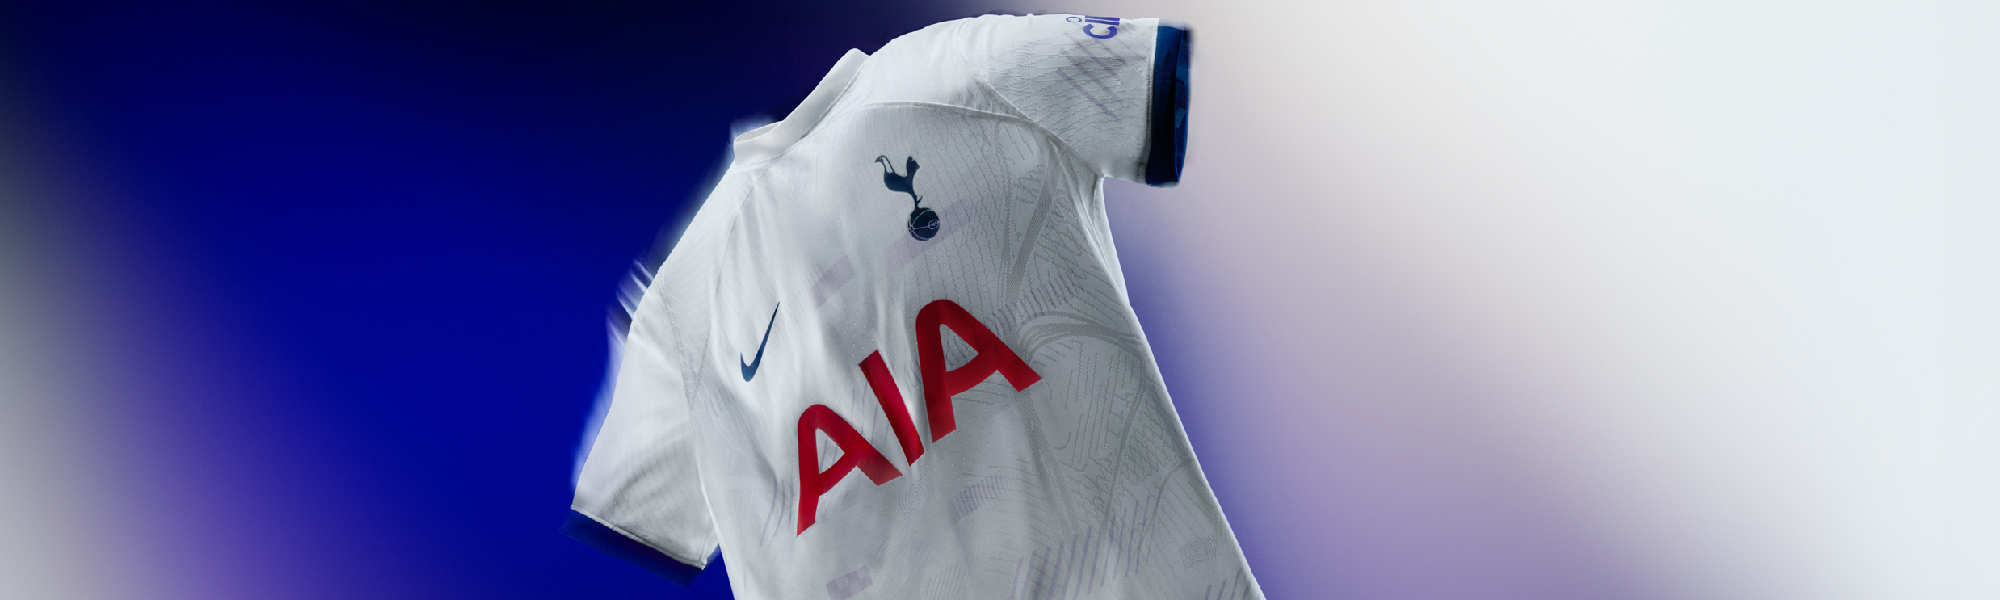 Nike Tottenham L/S GK Jersey - 2019/20 - SoccerPro